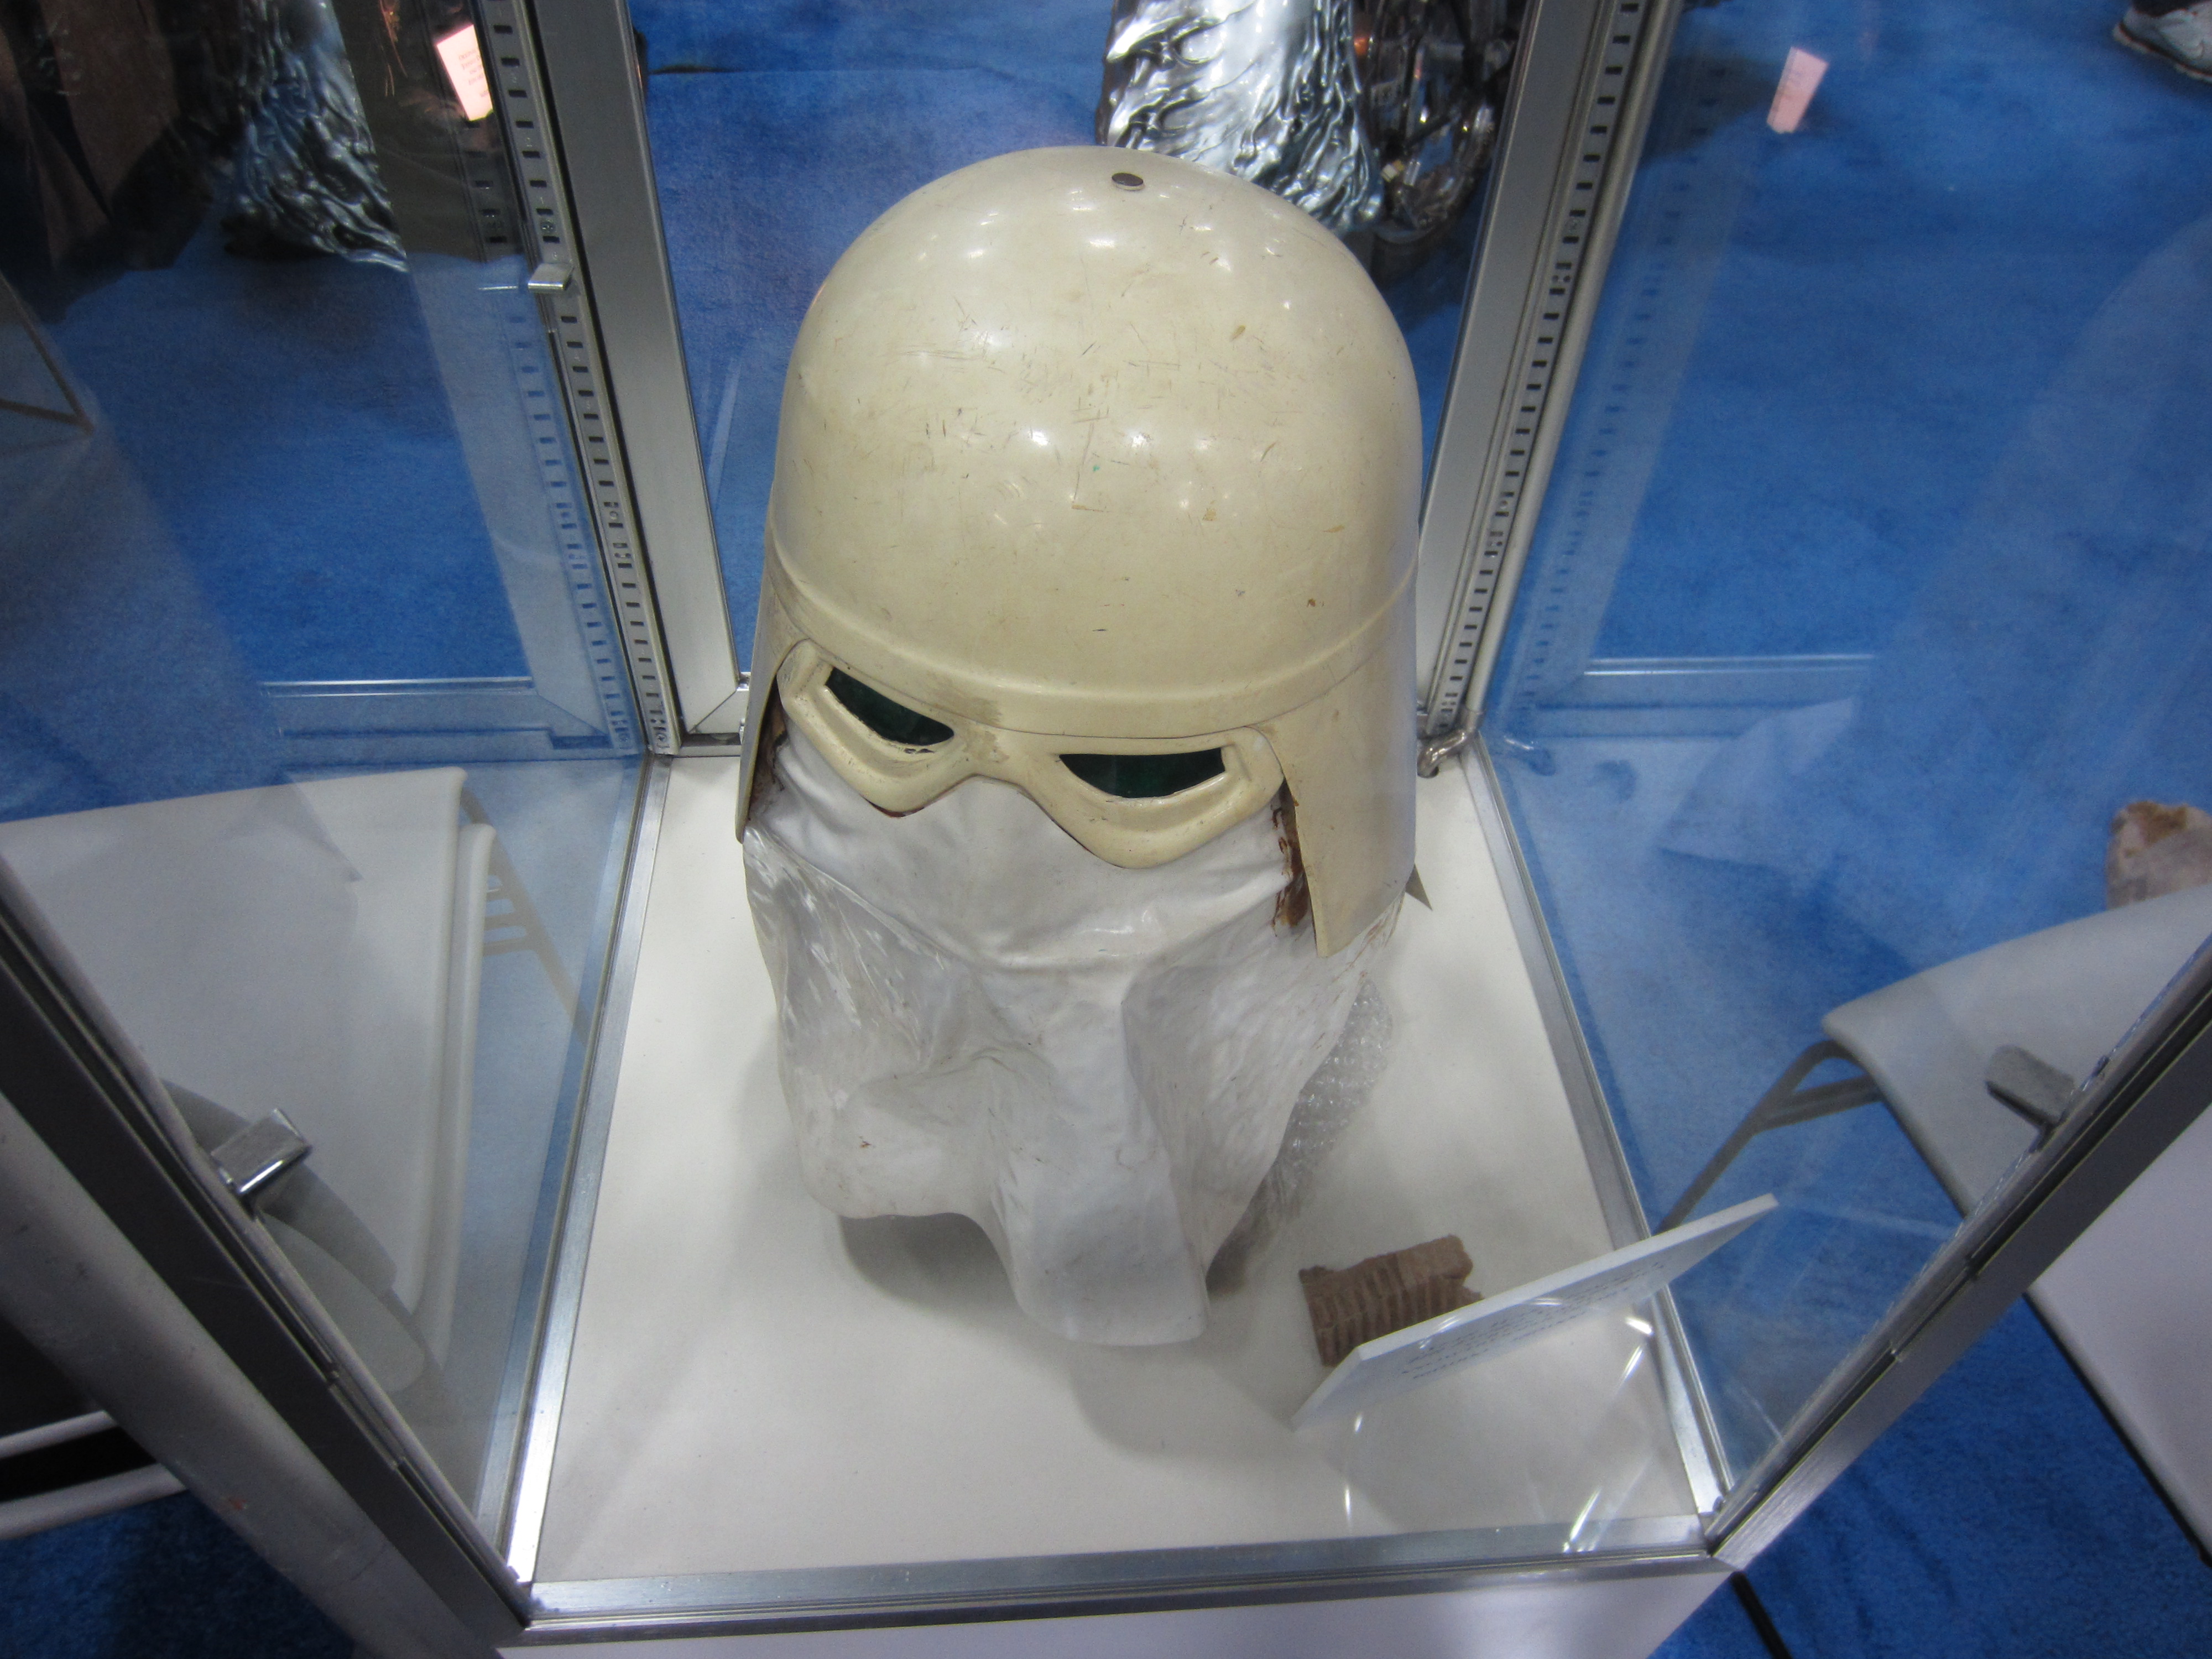 empire-strikes-back-snowtrooper-helmet.jpg